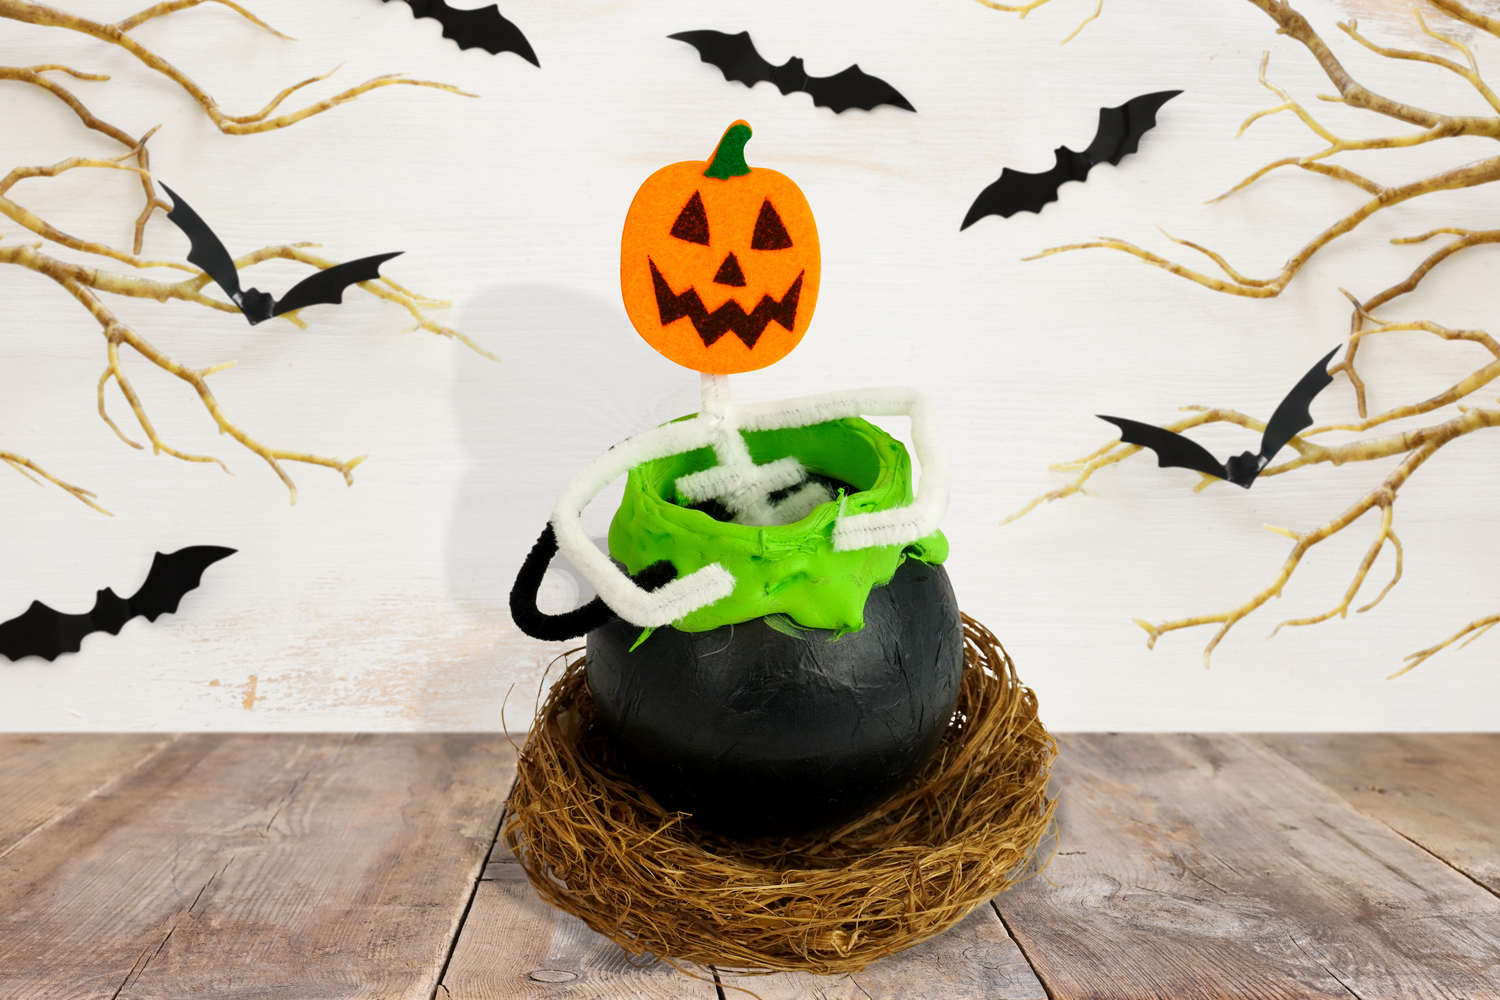 Coloriage Halloween avec modèle : Sorcière et son chaudron